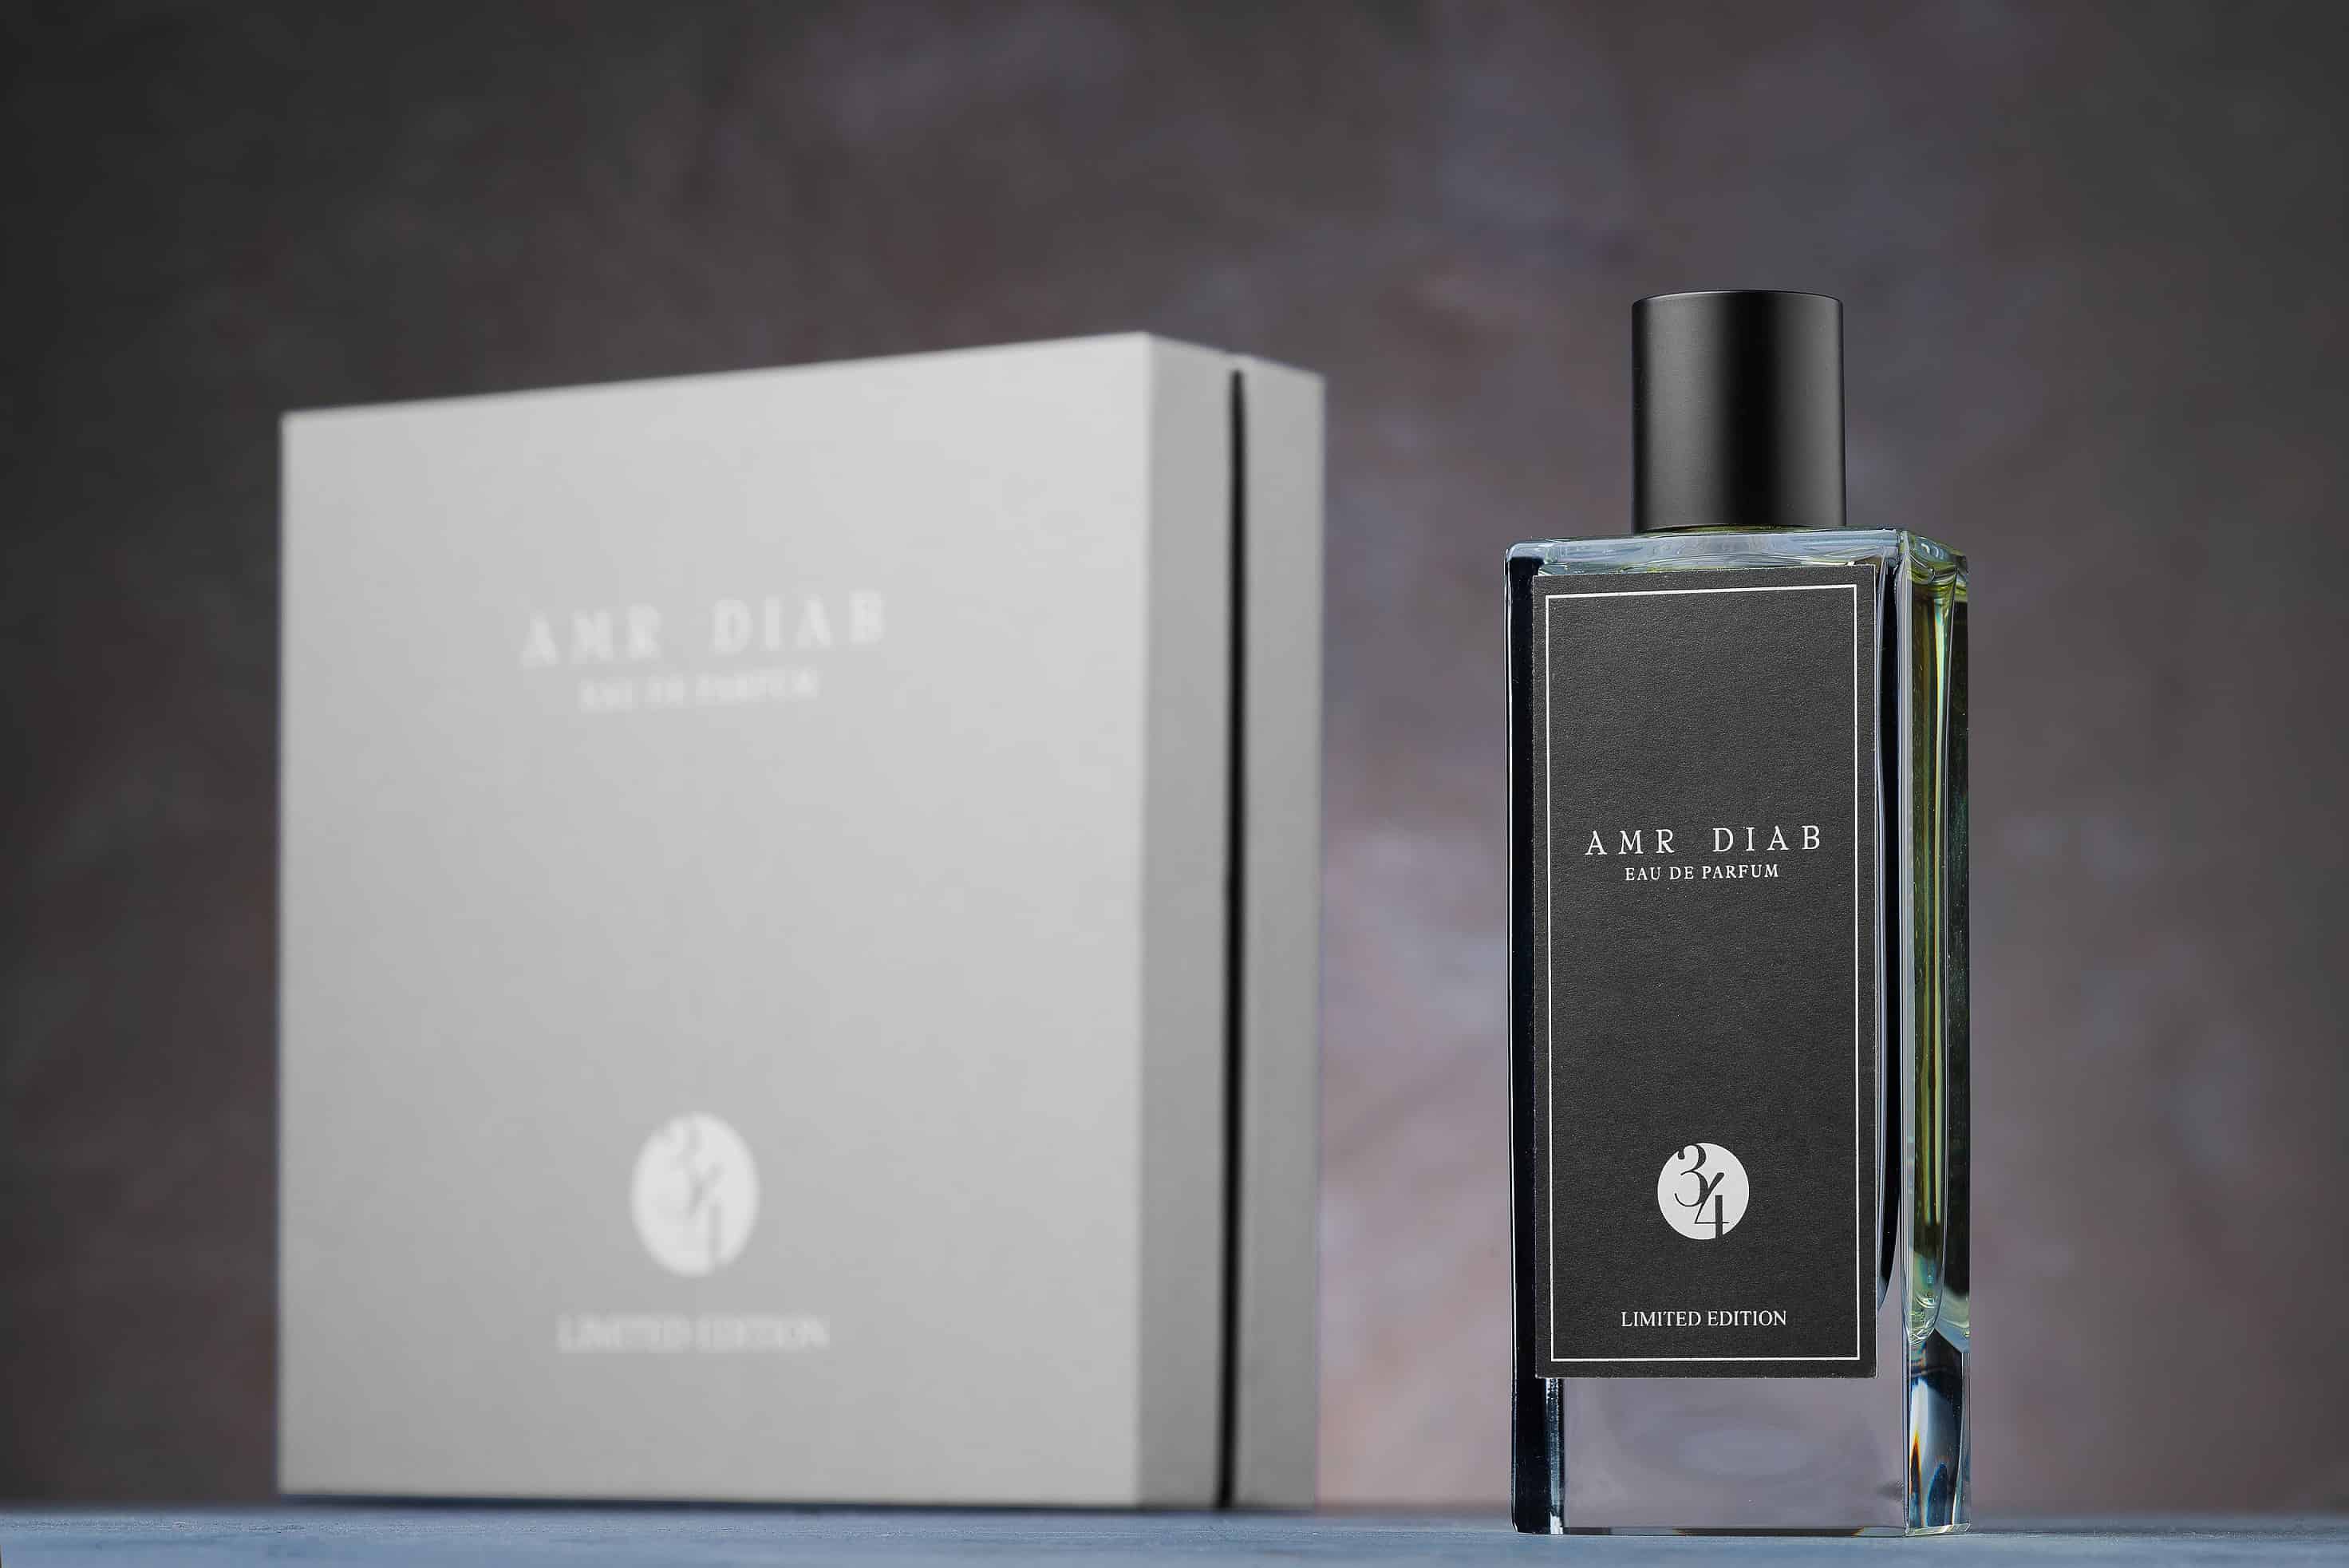 El nuevo perfume Amr Diab "34" se lanza en exclusiva en Amazon UAE Sí